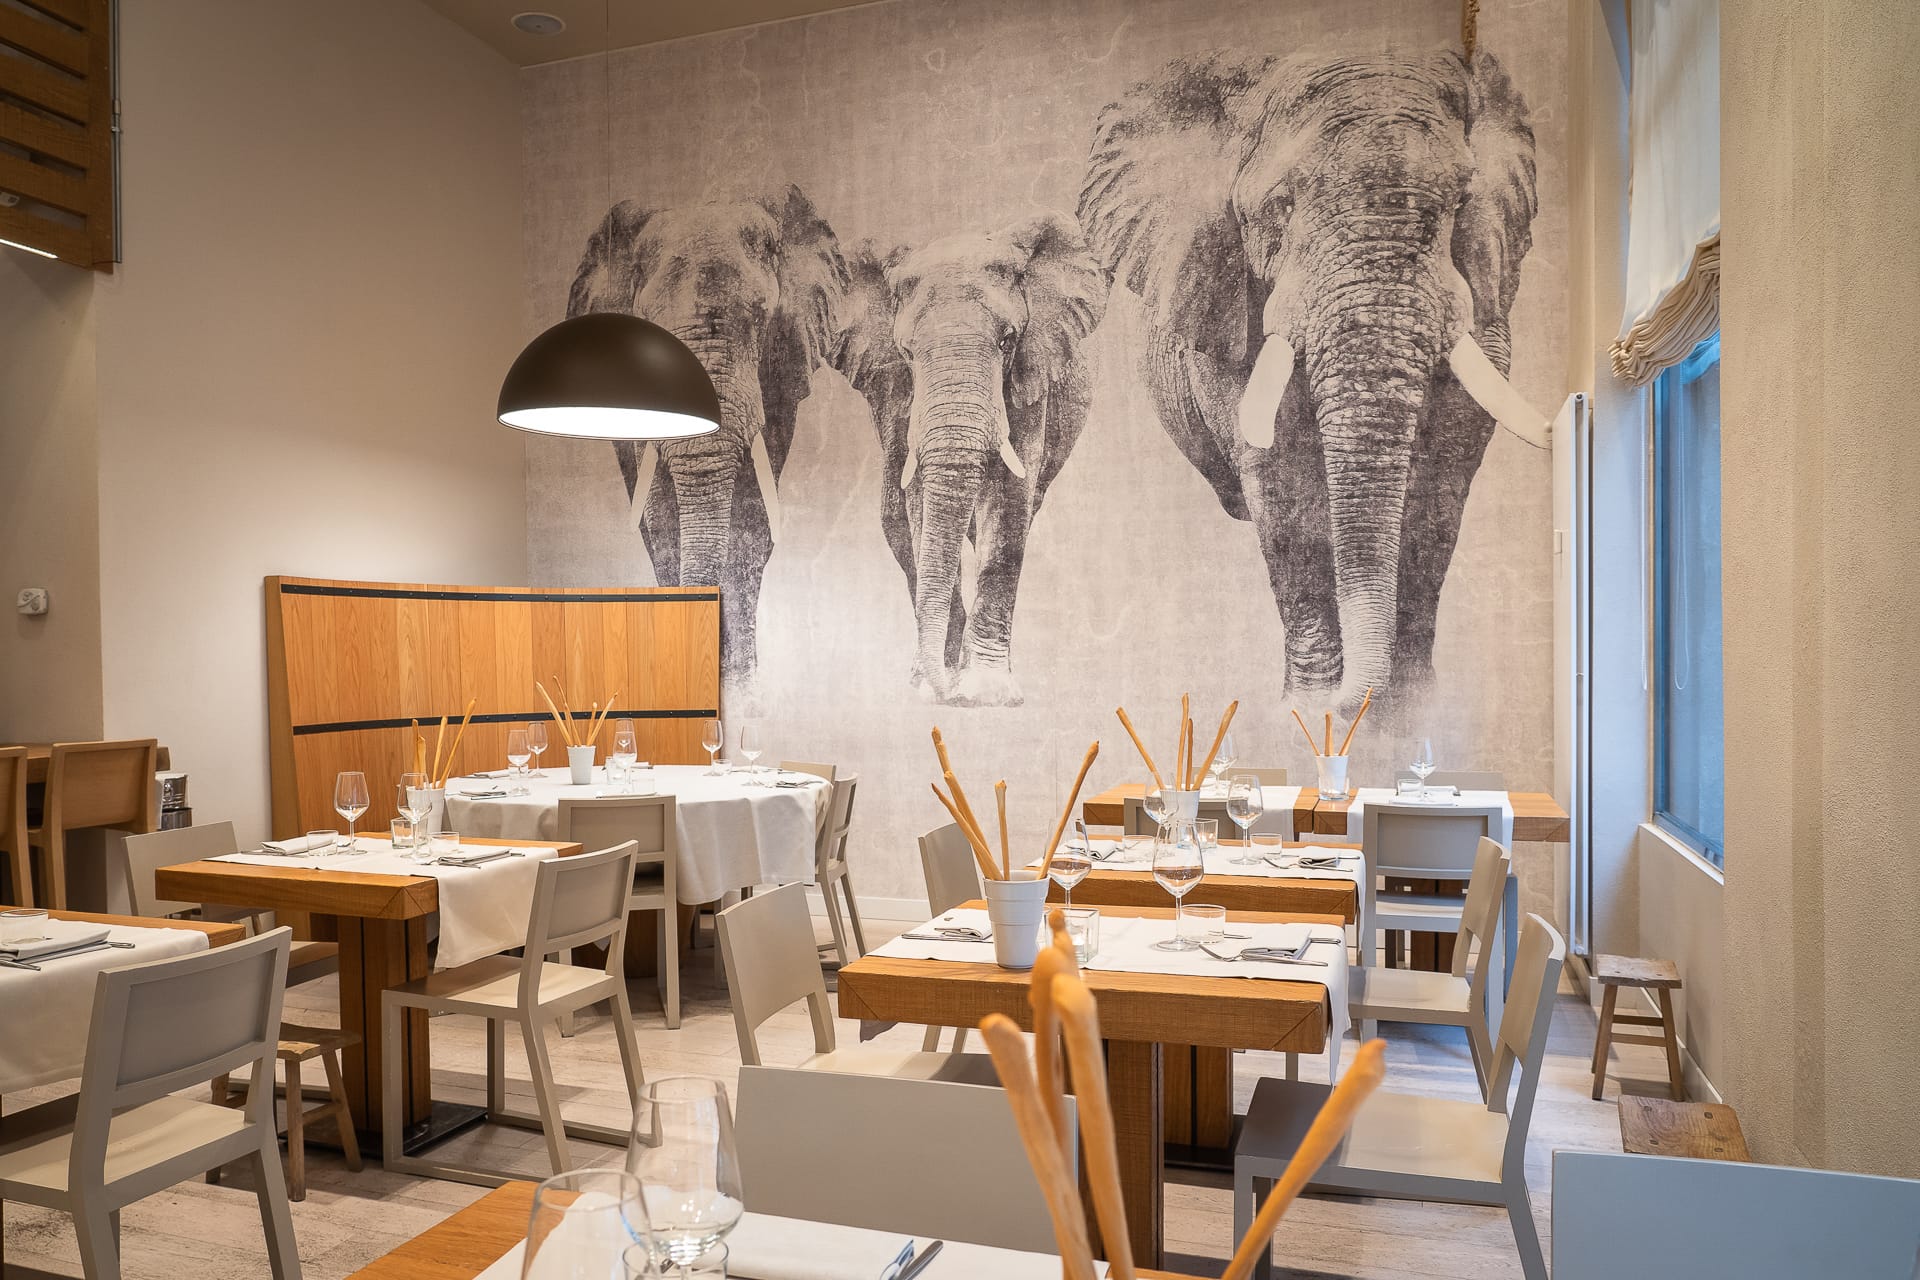 sala principale ristorante angolo 16 con tavoli apparecchiati e murales di elefanti